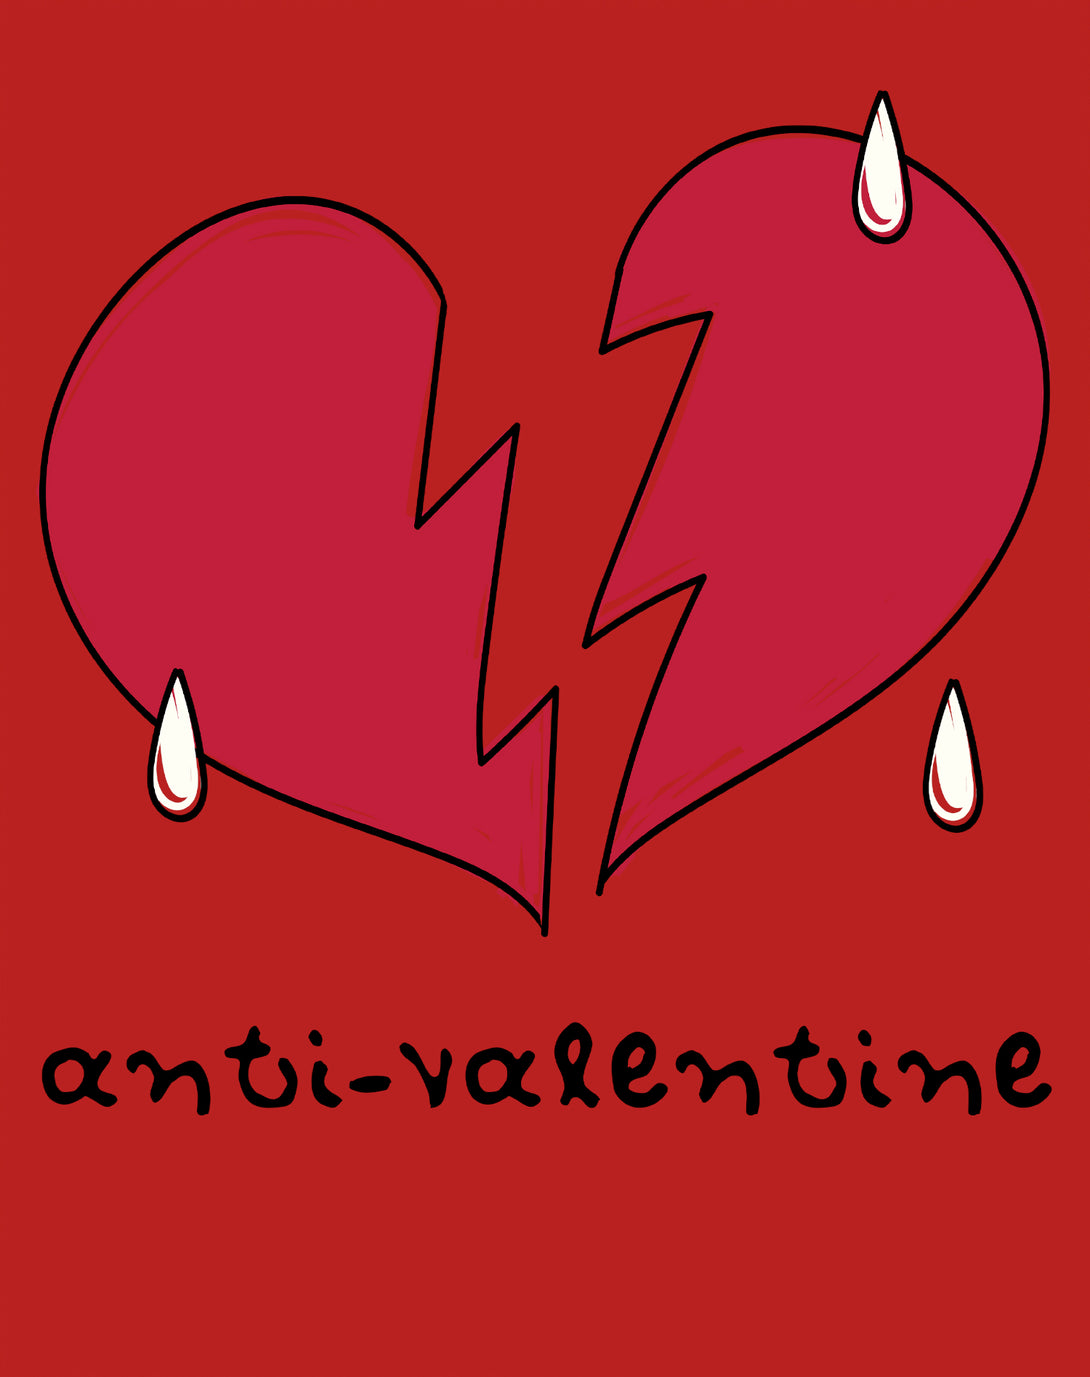 Anti Valentine Broken Weeping Heart Women's T-shirt Red - Urban Species Design Close Up